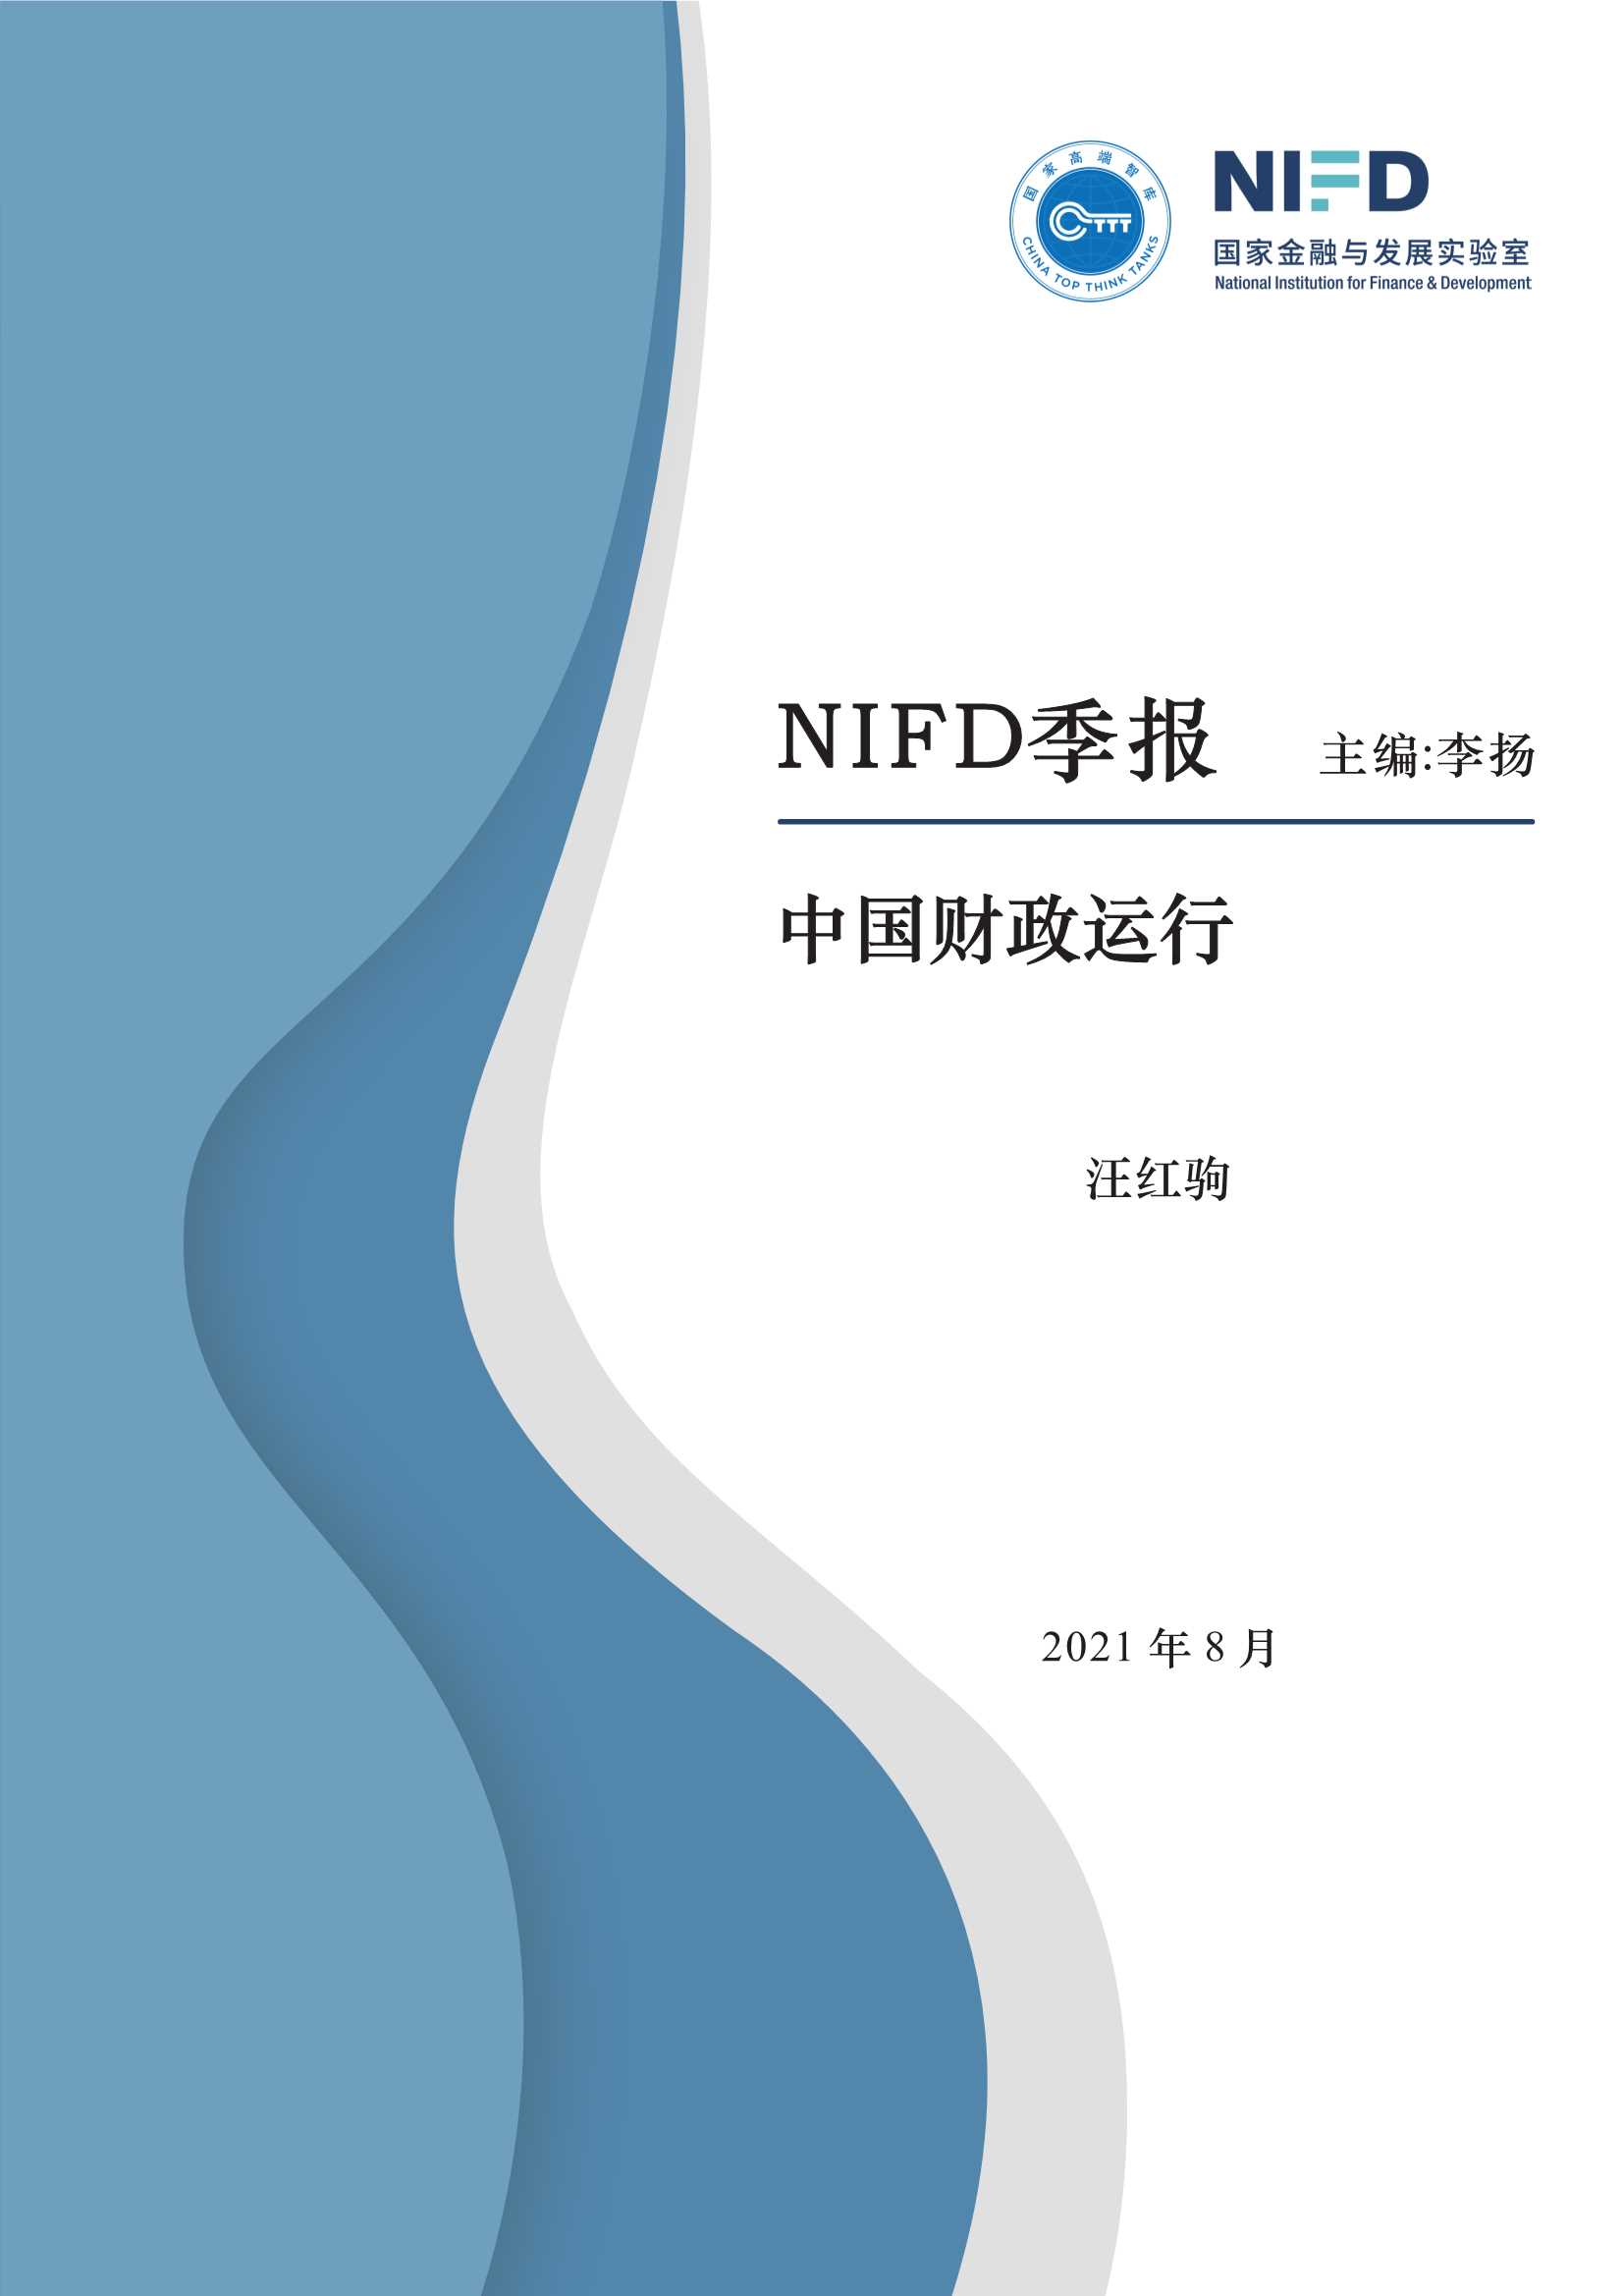 NIFD-2021Q2中国财政运行-2021.08-22页